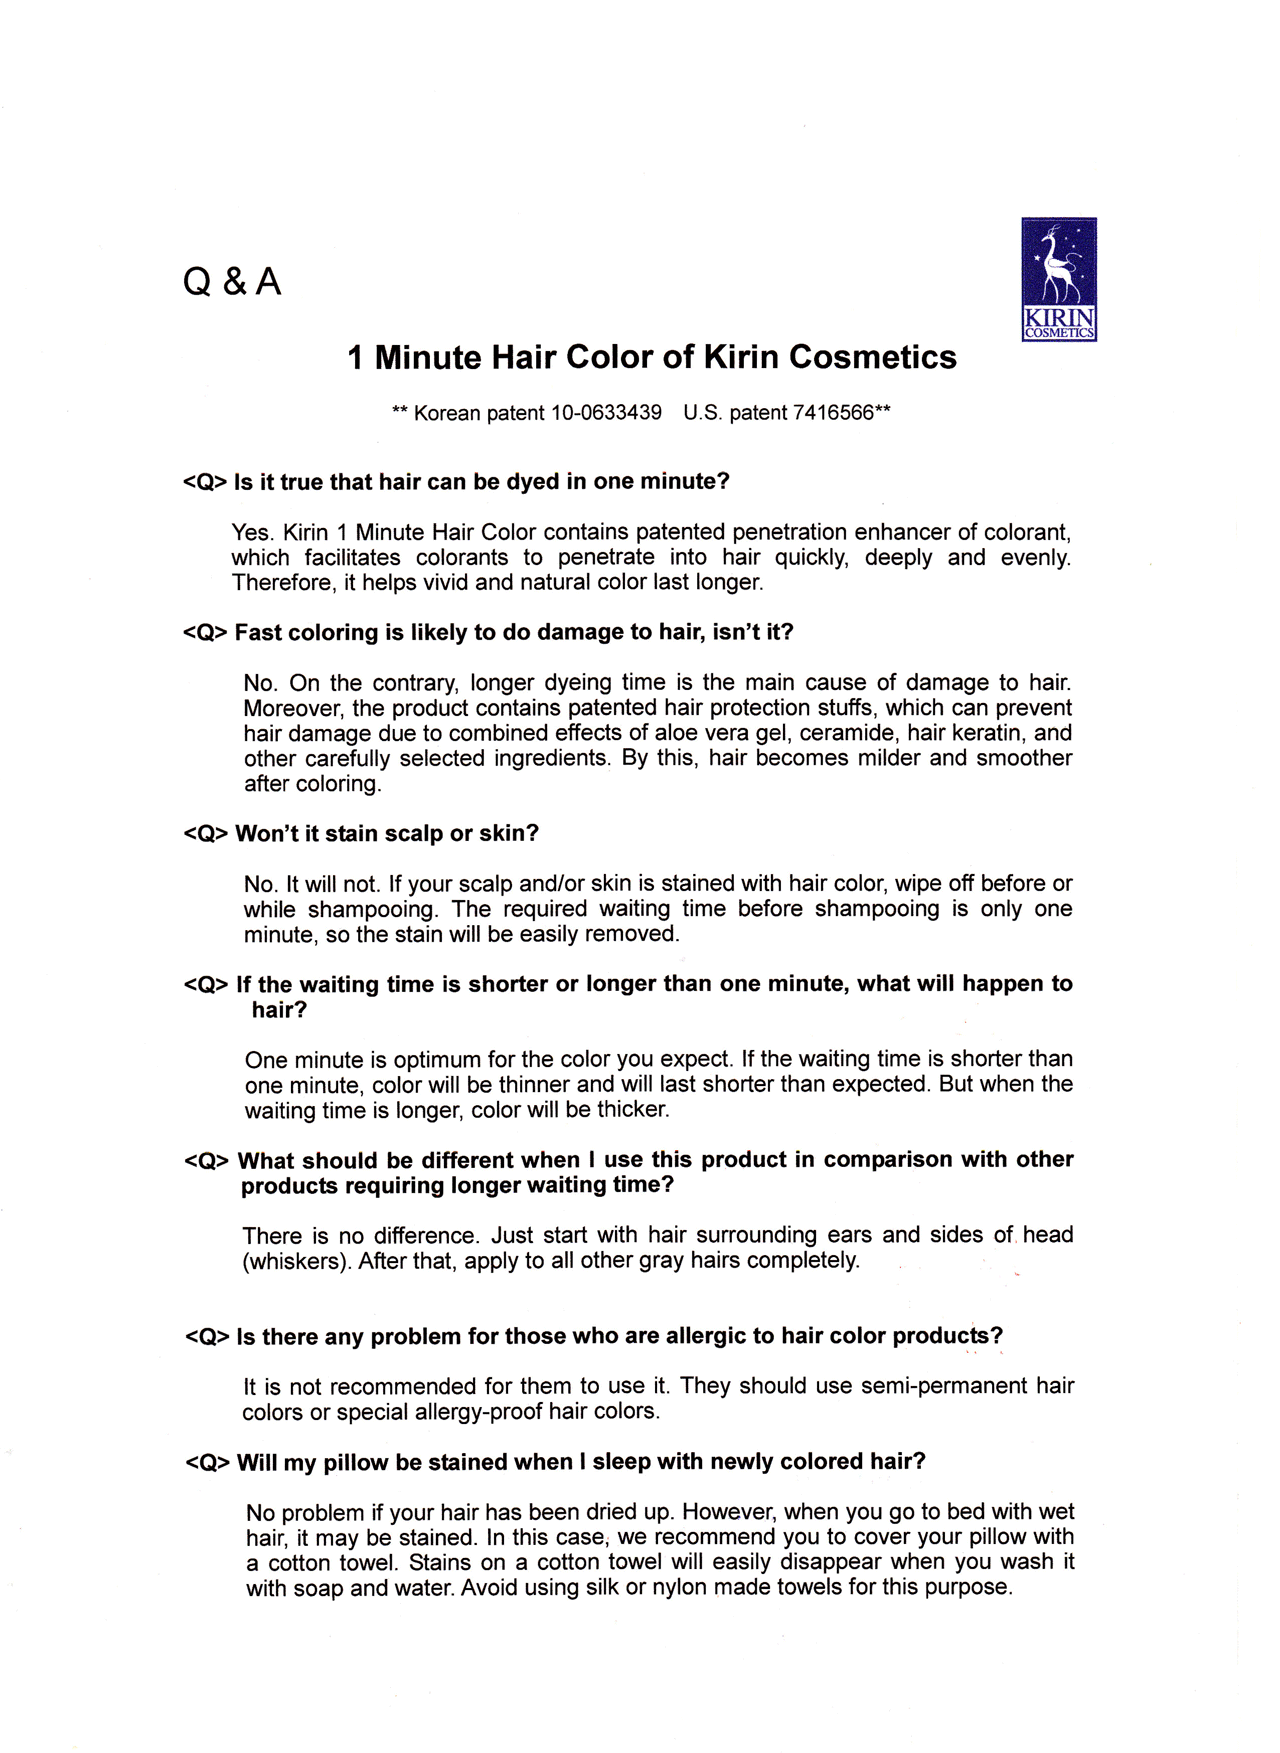 1분 염색에 대한 Q&A (영어) [첨부 이미지1]